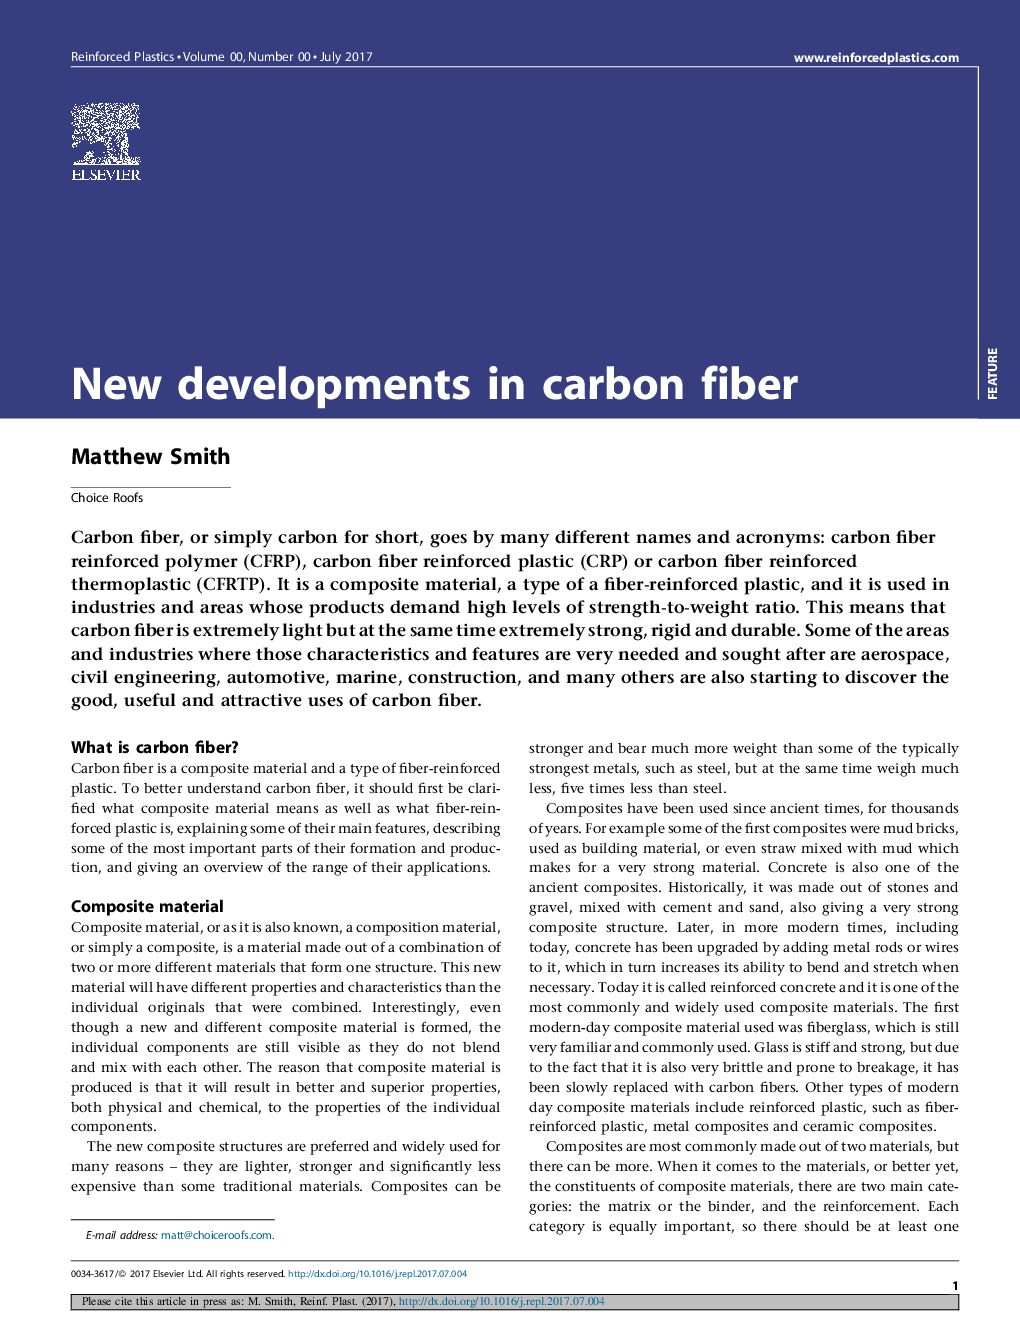 پیشرفت های جدید در فیبر کربن